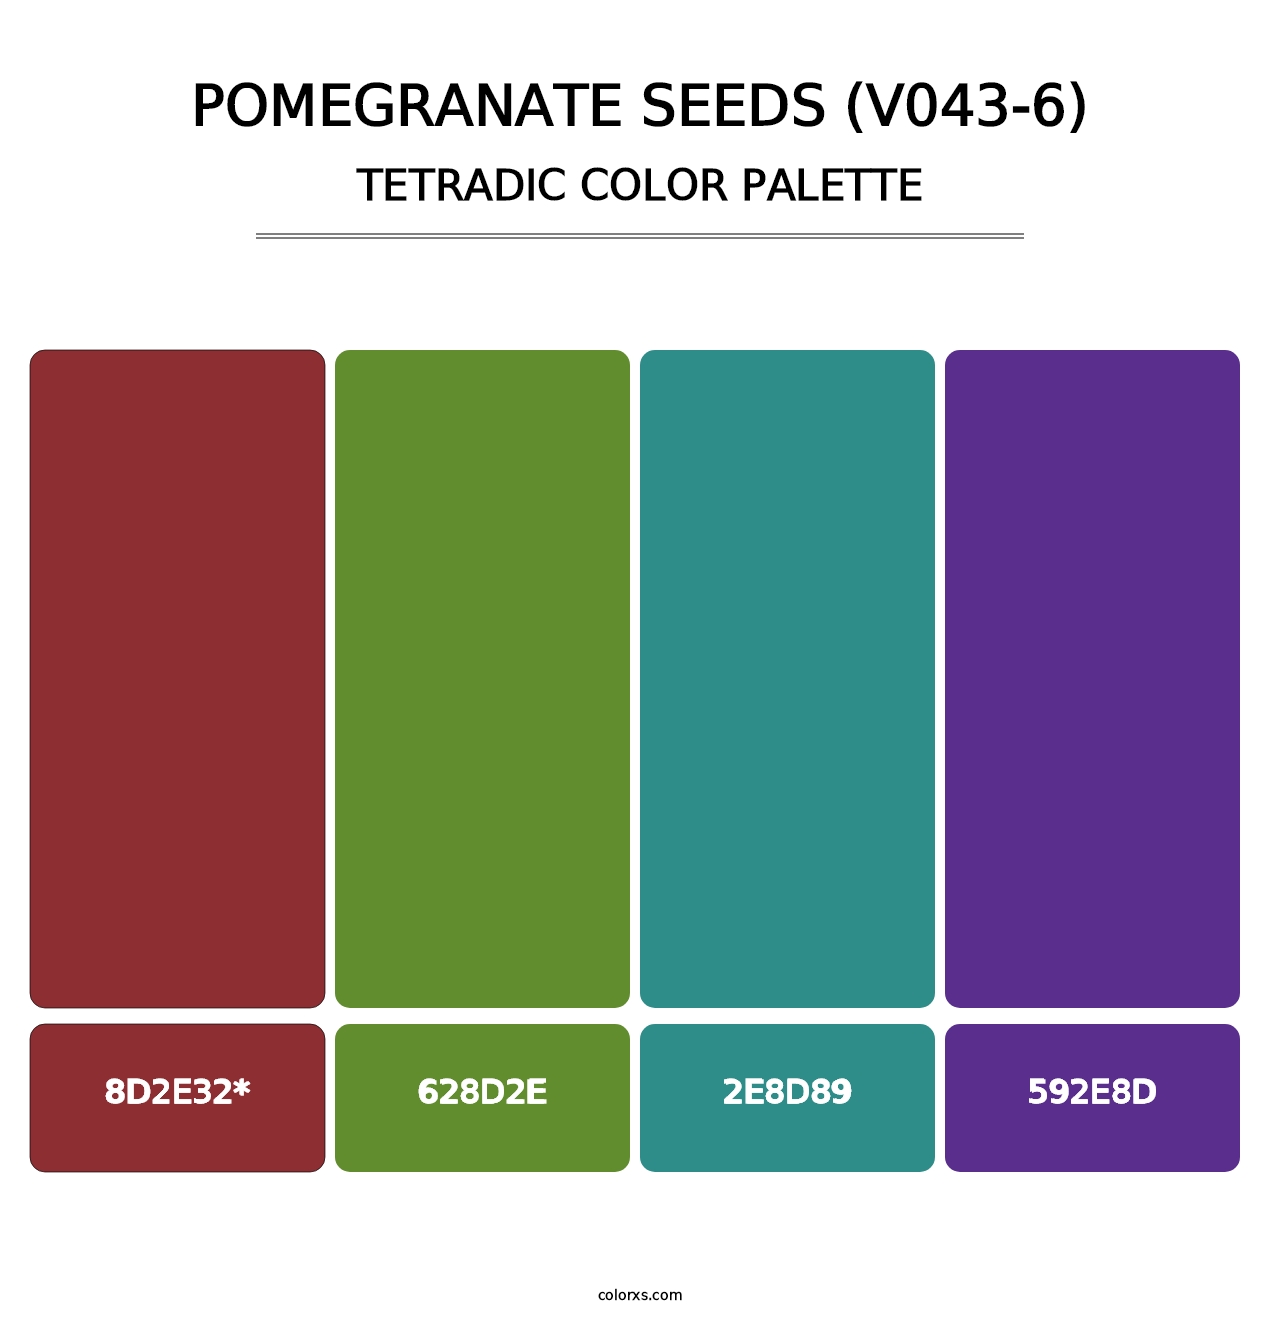 Pomegranate Seeds (V043-6) - Tetradic Color Palette